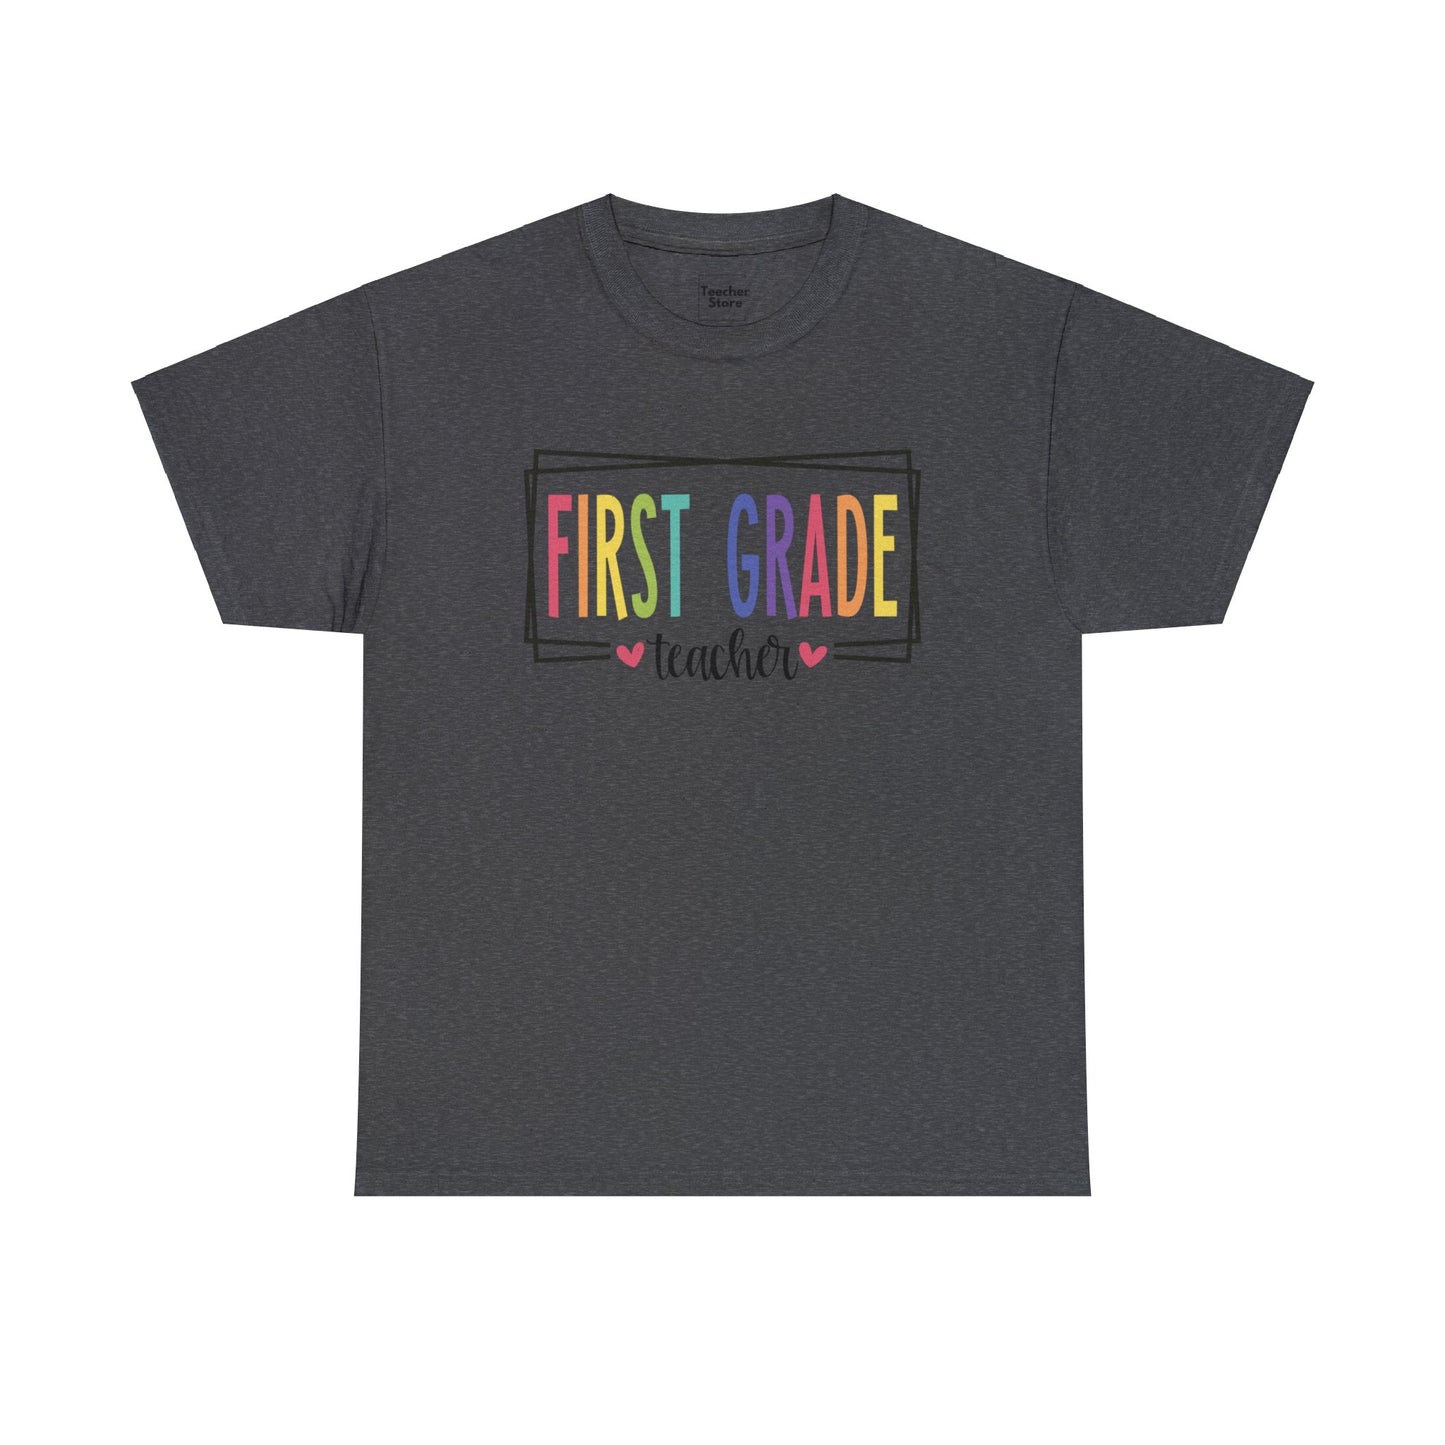 First Grade Teacher Tee-Shirt